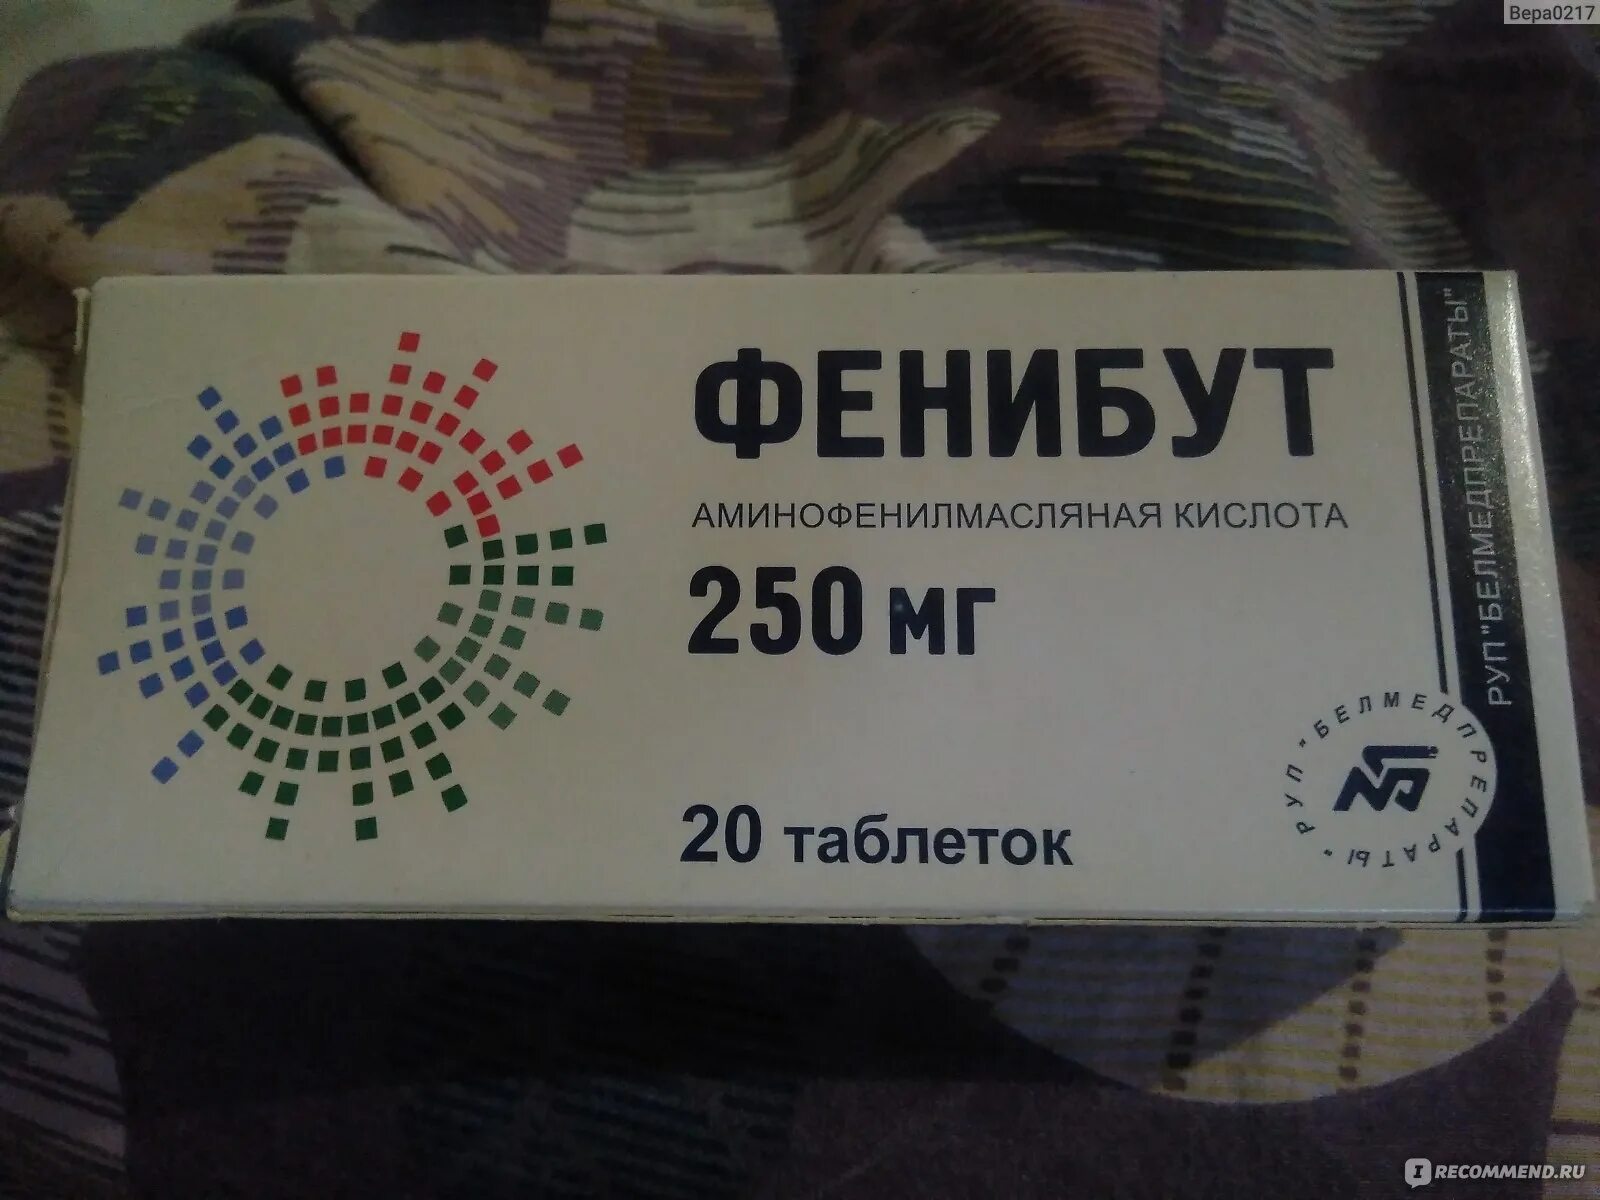 Фенибут это транквилизатор. Фенибут 250 мг Прибалтика. Фенибут 250 мг латвийский. Фенибут 250 производитель Латвия. Фенибут 250 Прибалтика.